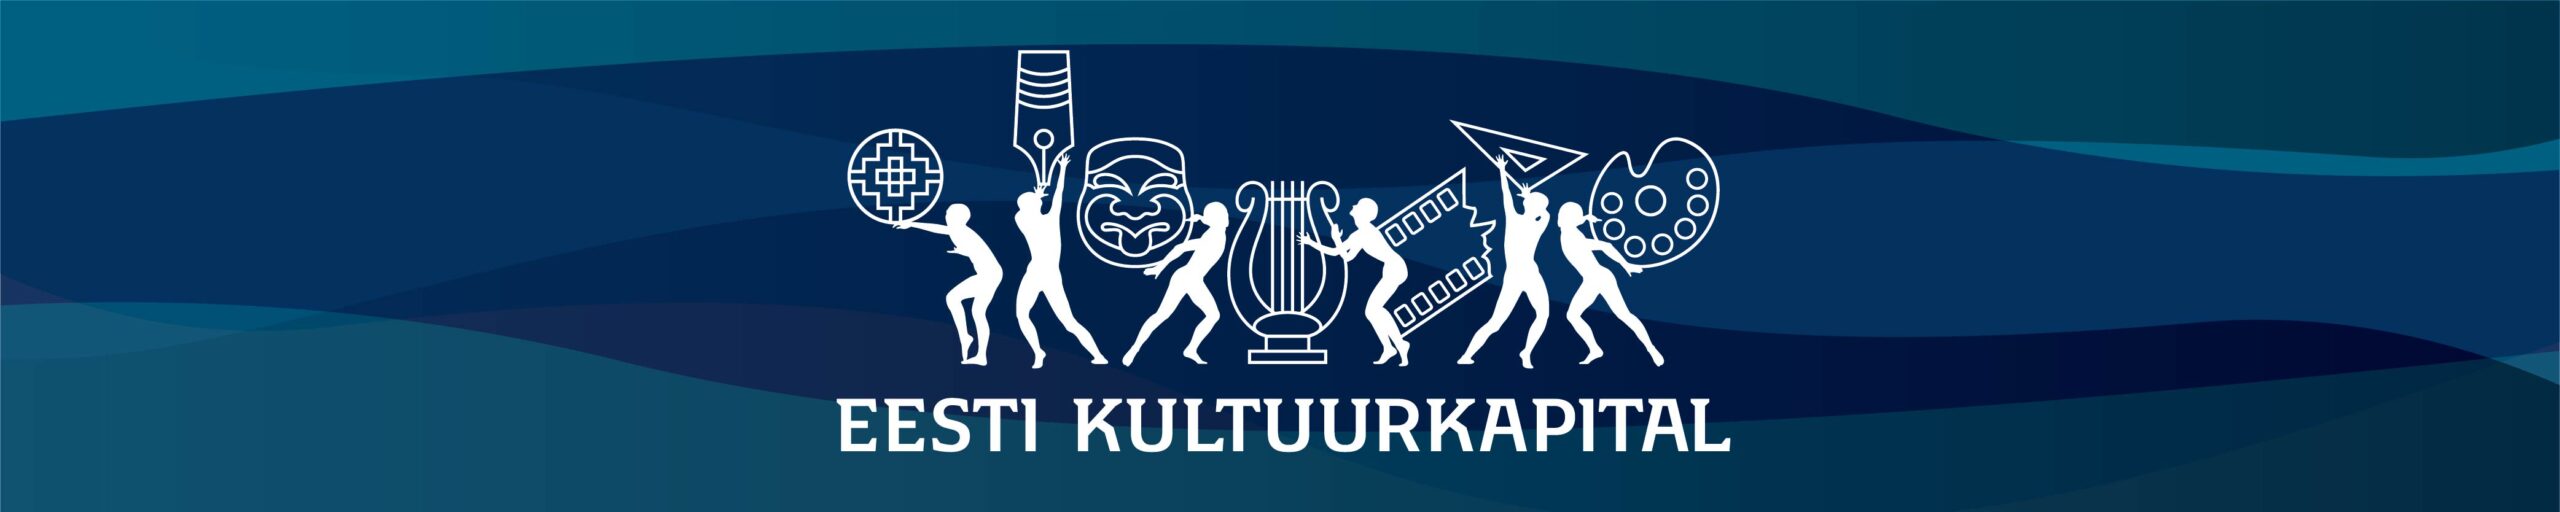 ESM_kodukale_banner_reklaam_Kulka